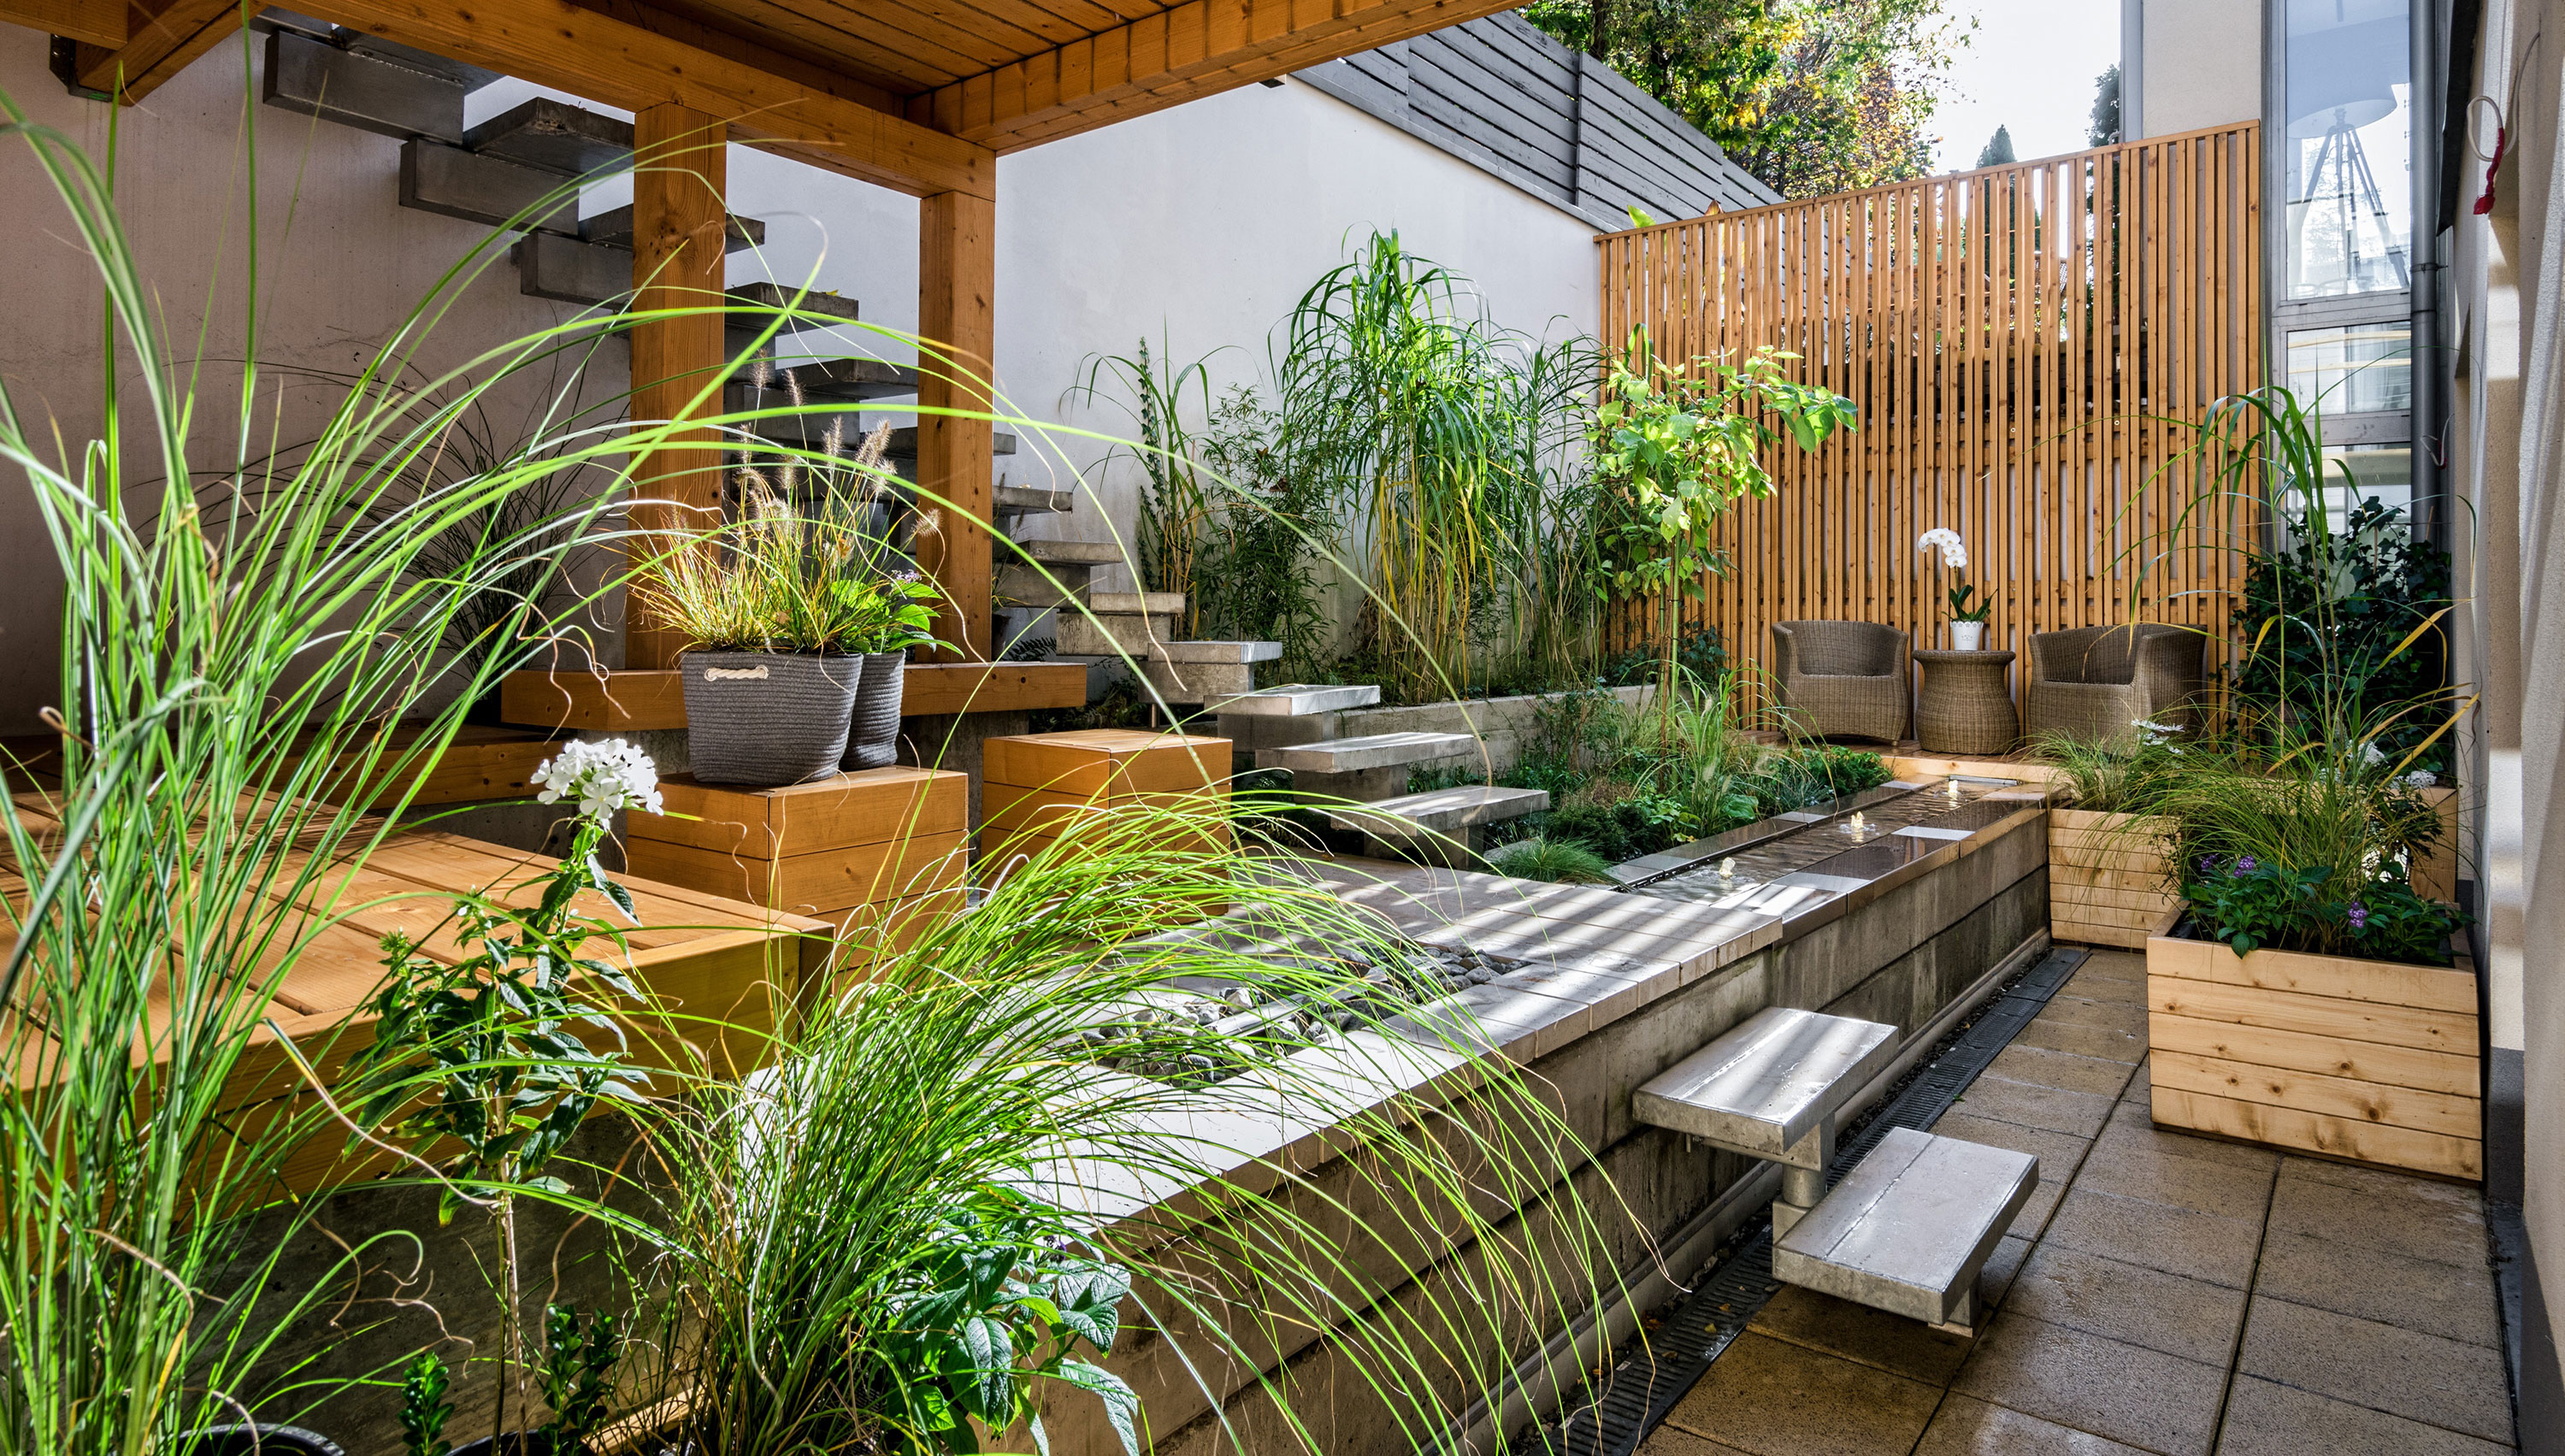 Flora Gartenbau - Foto einer grünen Innenhofgestaltung mit Sitzplätzen